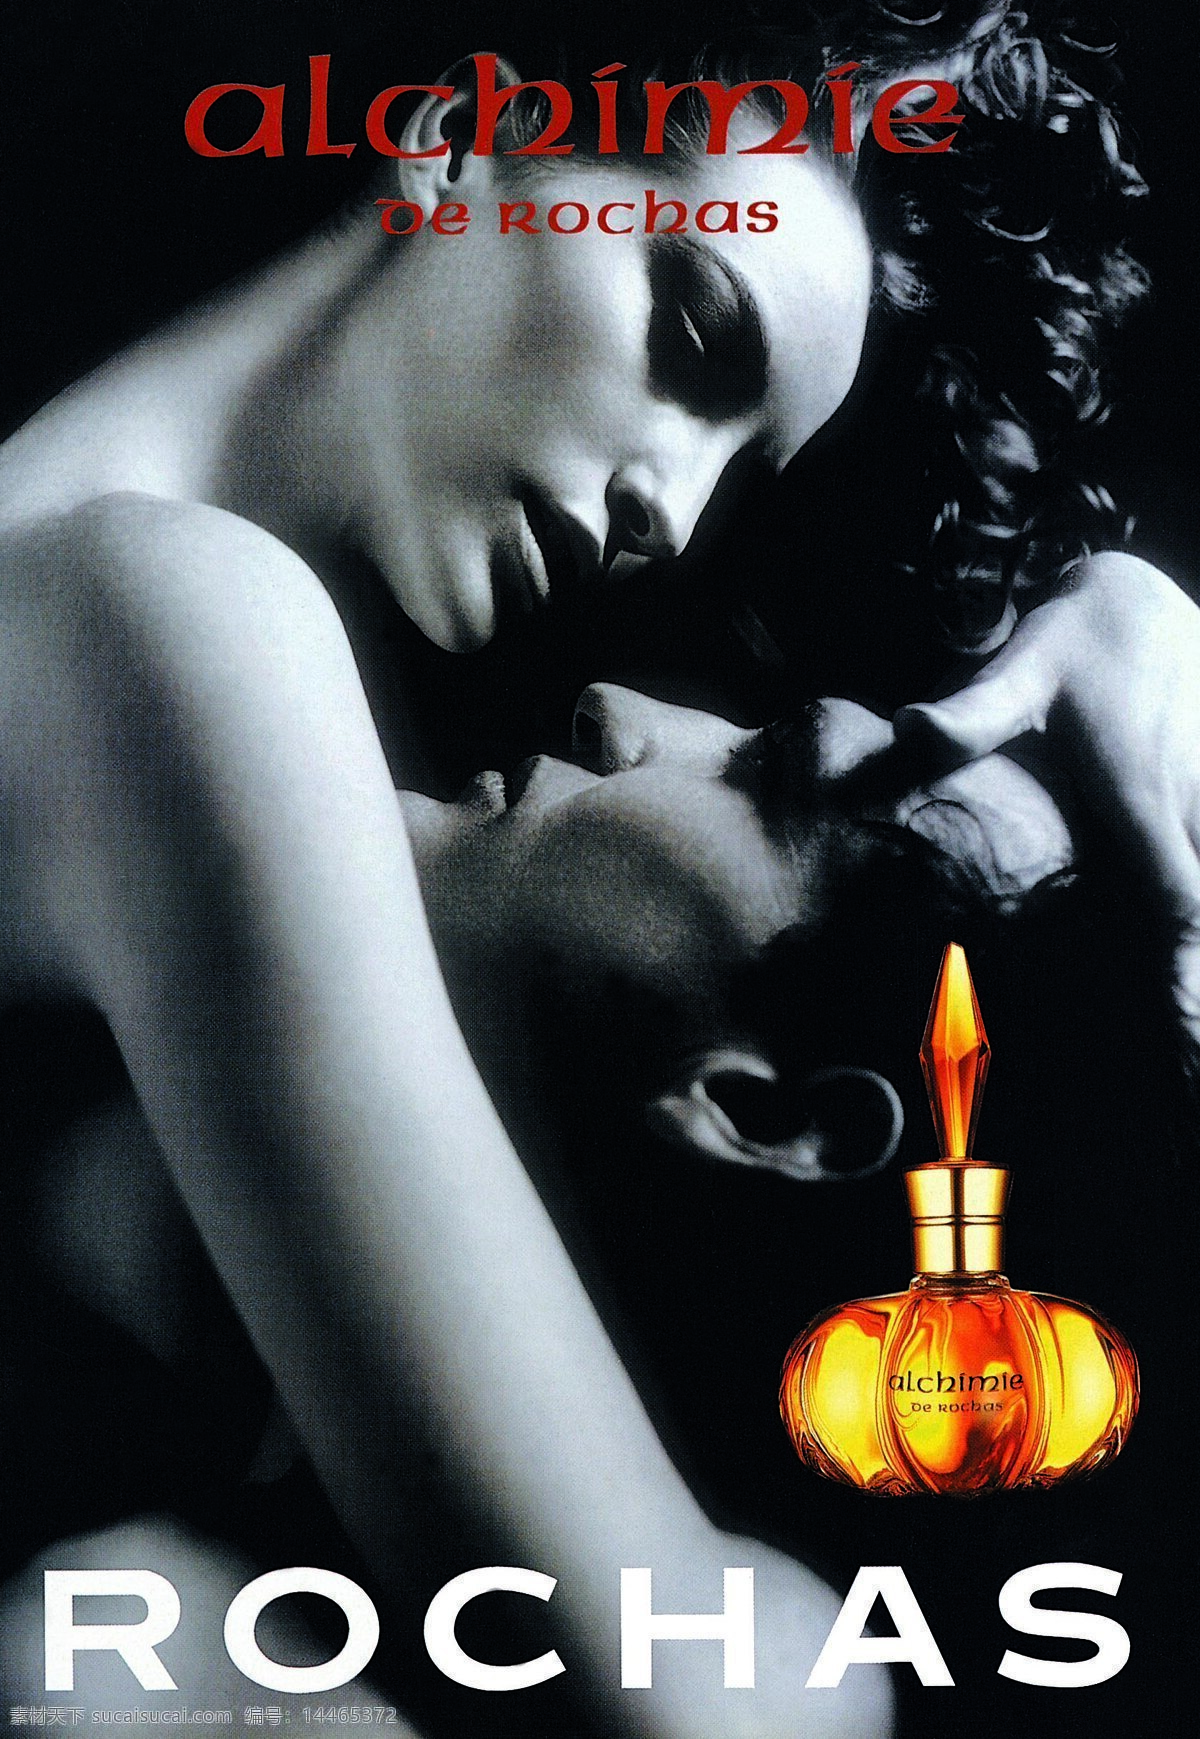 香水广告 平面创意 设计素材 美容化妆 平面设计 黑色